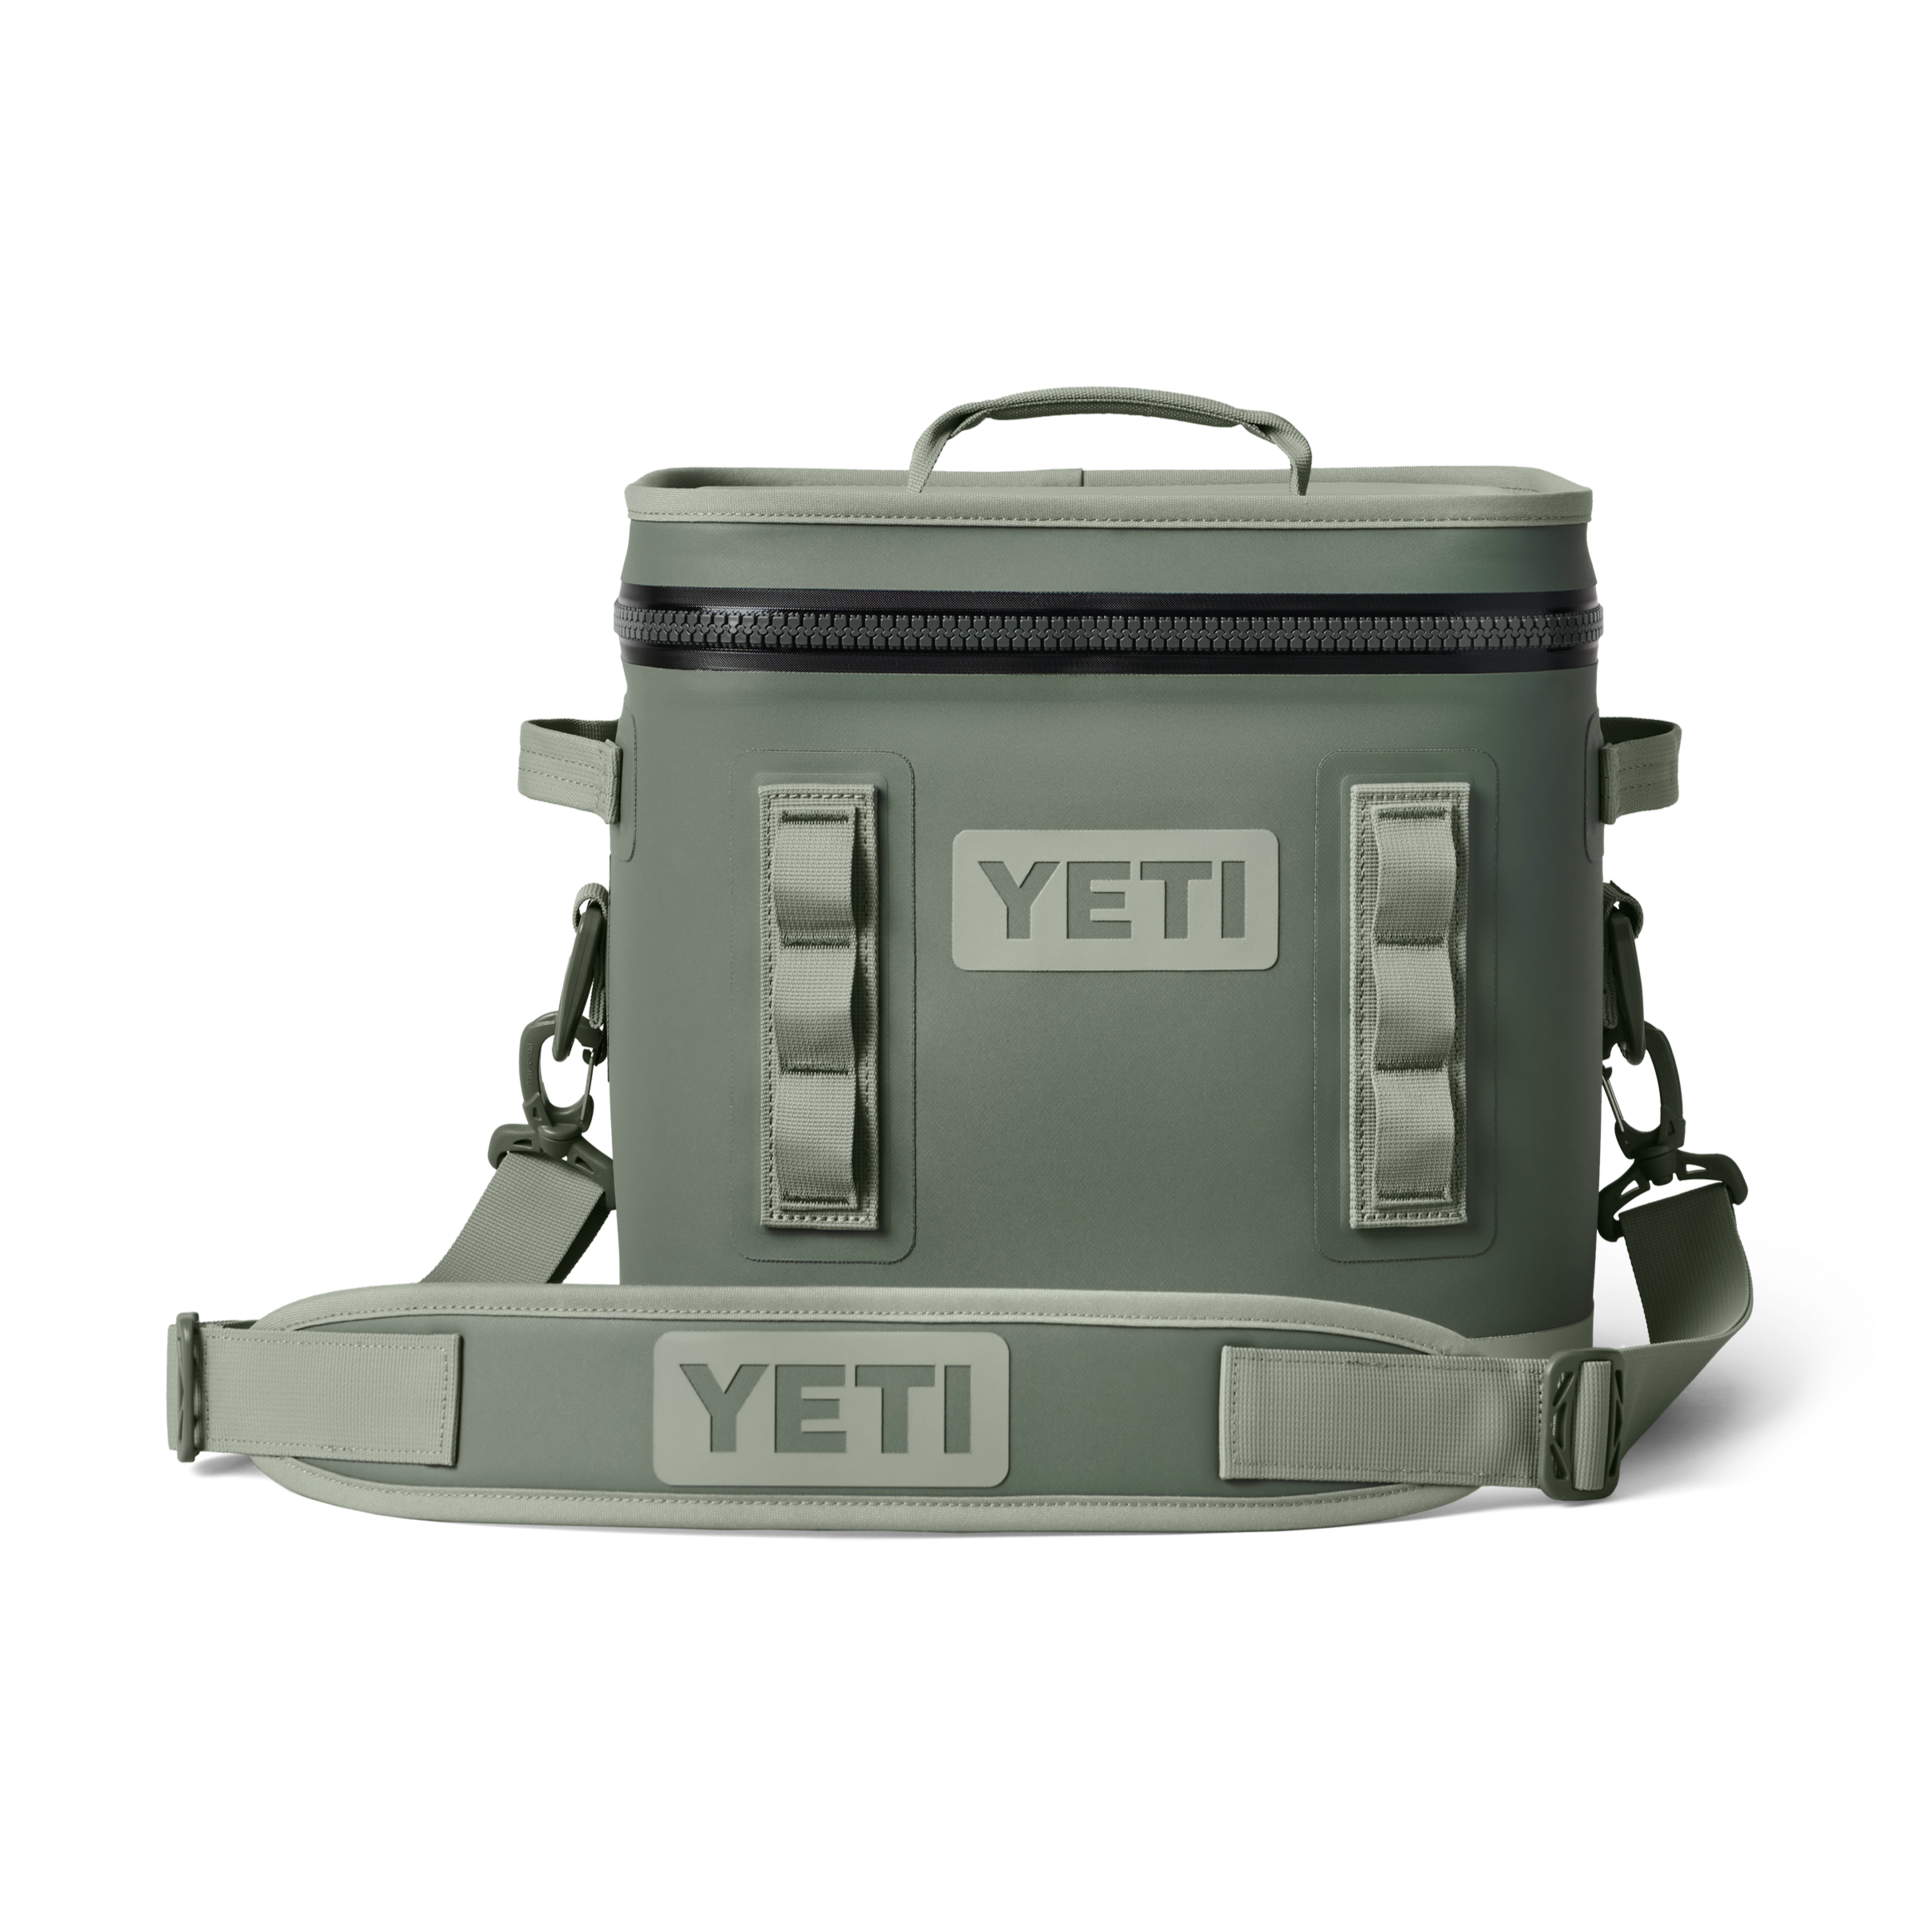  YETI Daytrip Lunch Box, High Desert Clay: Home & Kitchen